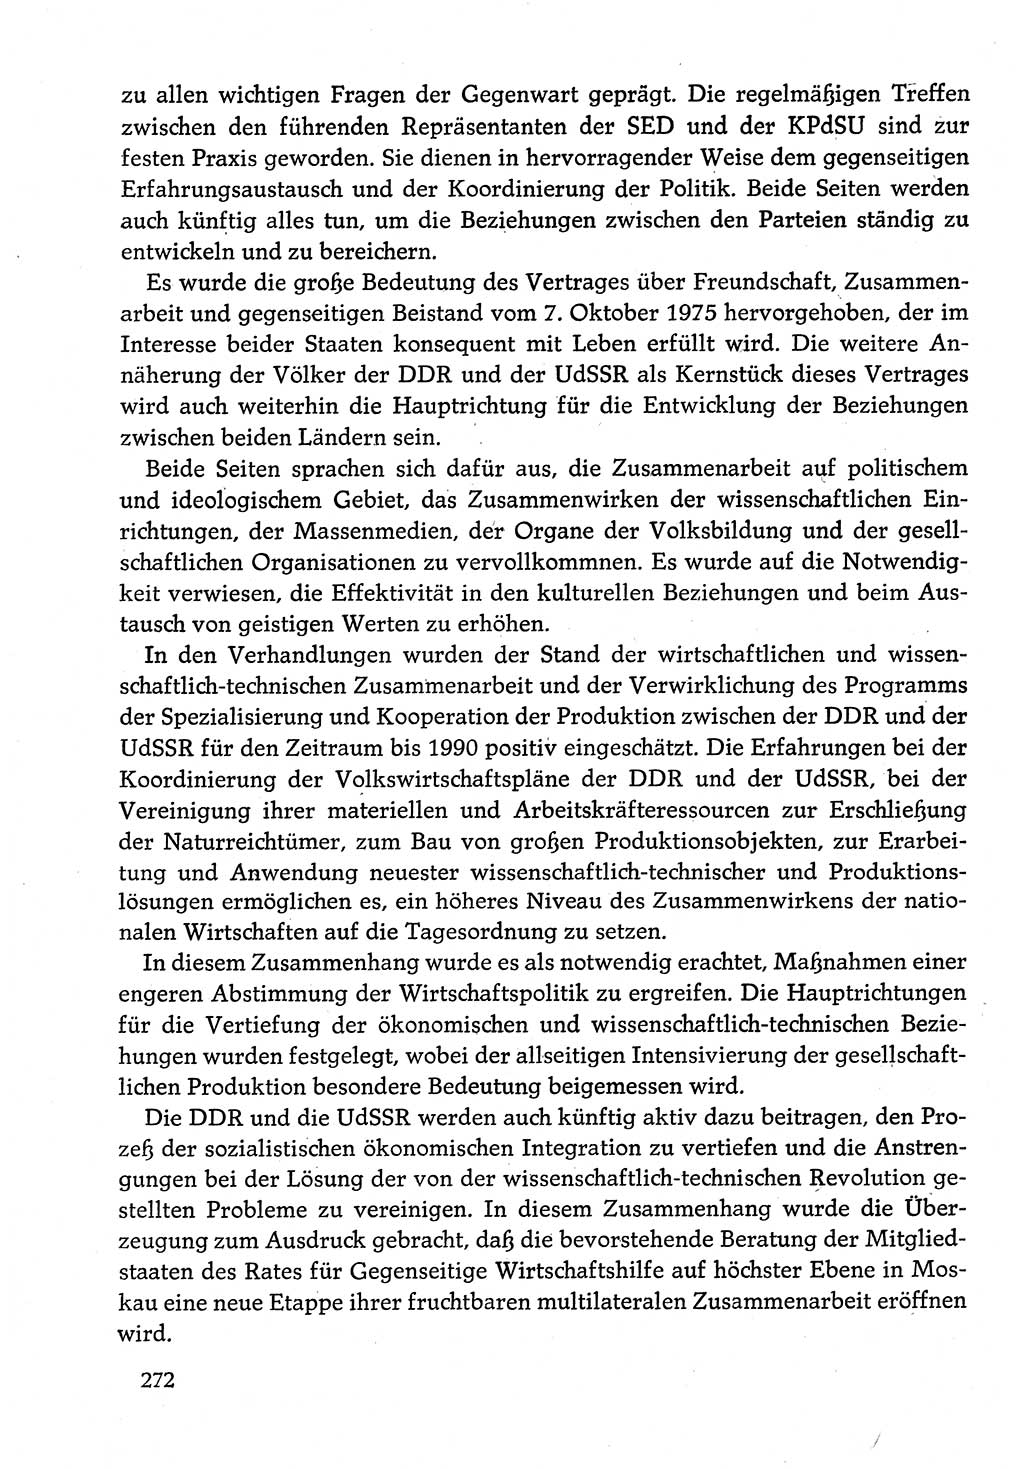 Dokumente der Sozialistischen Einheitspartei Deutschlands (SED) [Deutsche Demokratische Republik (DDR)] 1982-1983, Seite 272 (Dok. SED DDR 1982-1983, S. 272)